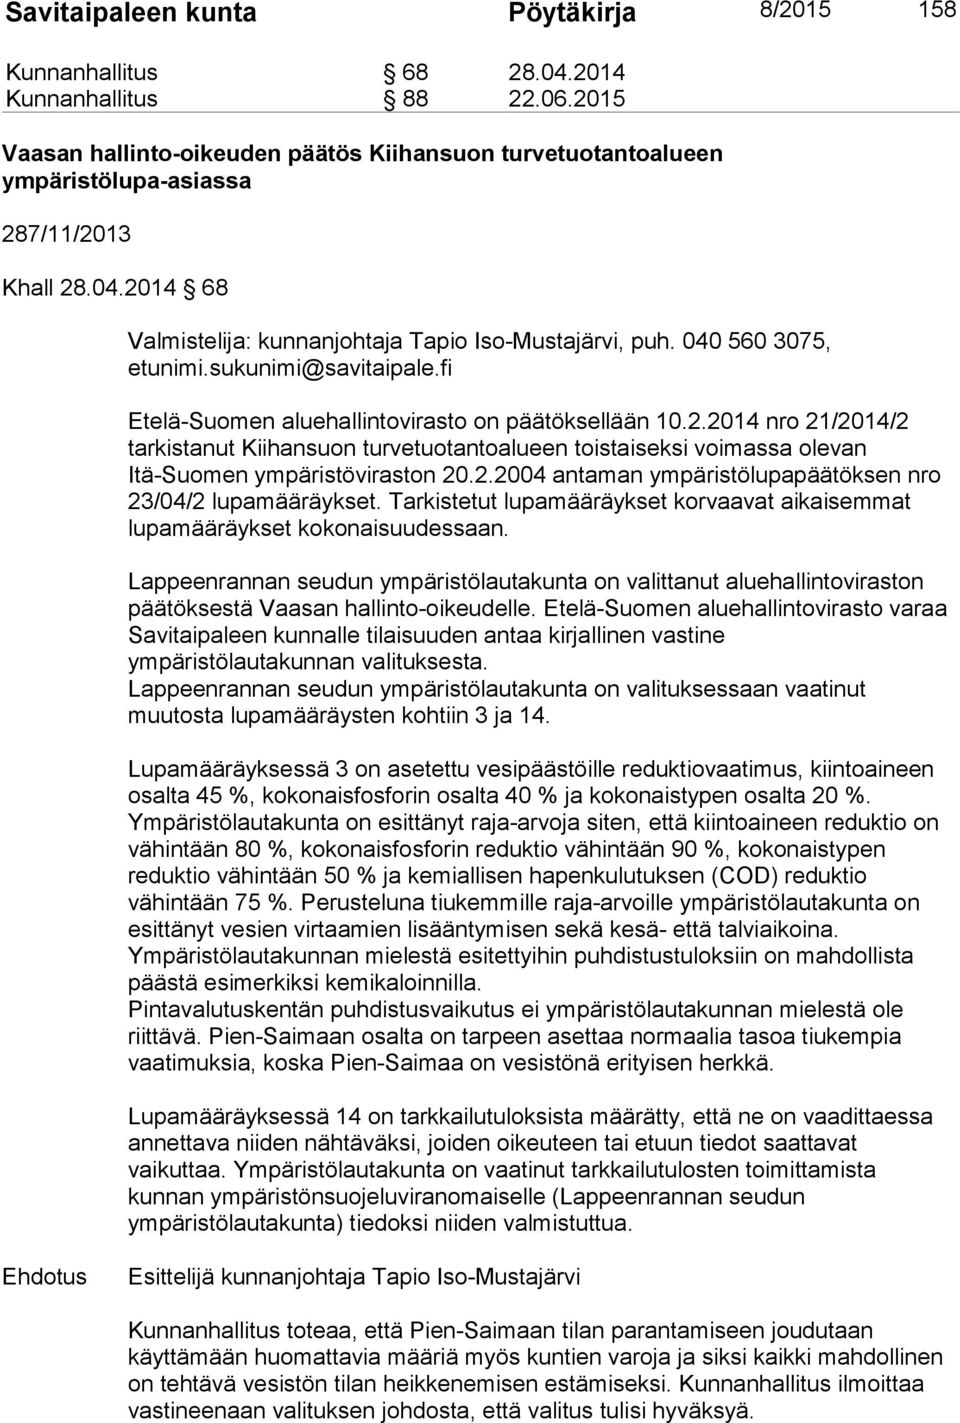 040 560 3075, Etelä-Suomen aluehallintovirasto on päätöksellään 10.2.2014 nro 21/2014/2 tarkistanut Kiihansuon turvetuotantoalueen toistaiseksi voimassa olevan Itä-Suomen ympäristöviraston 20.2.2004 antaman ympäristölupapäätöksen nro 23/04/2 lupamääräykset.